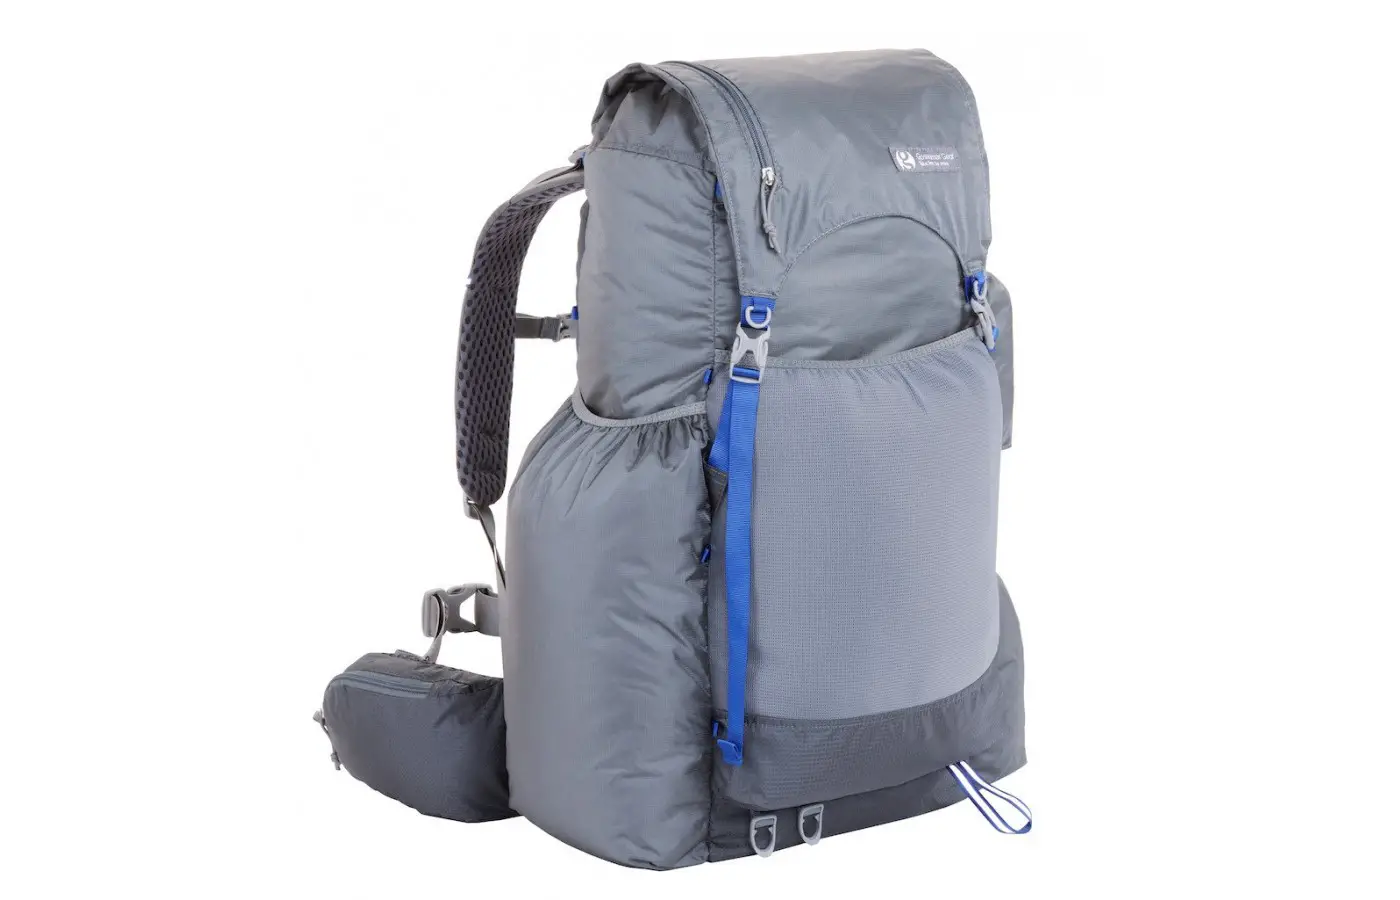 The Gossamer backpack is ultralight.